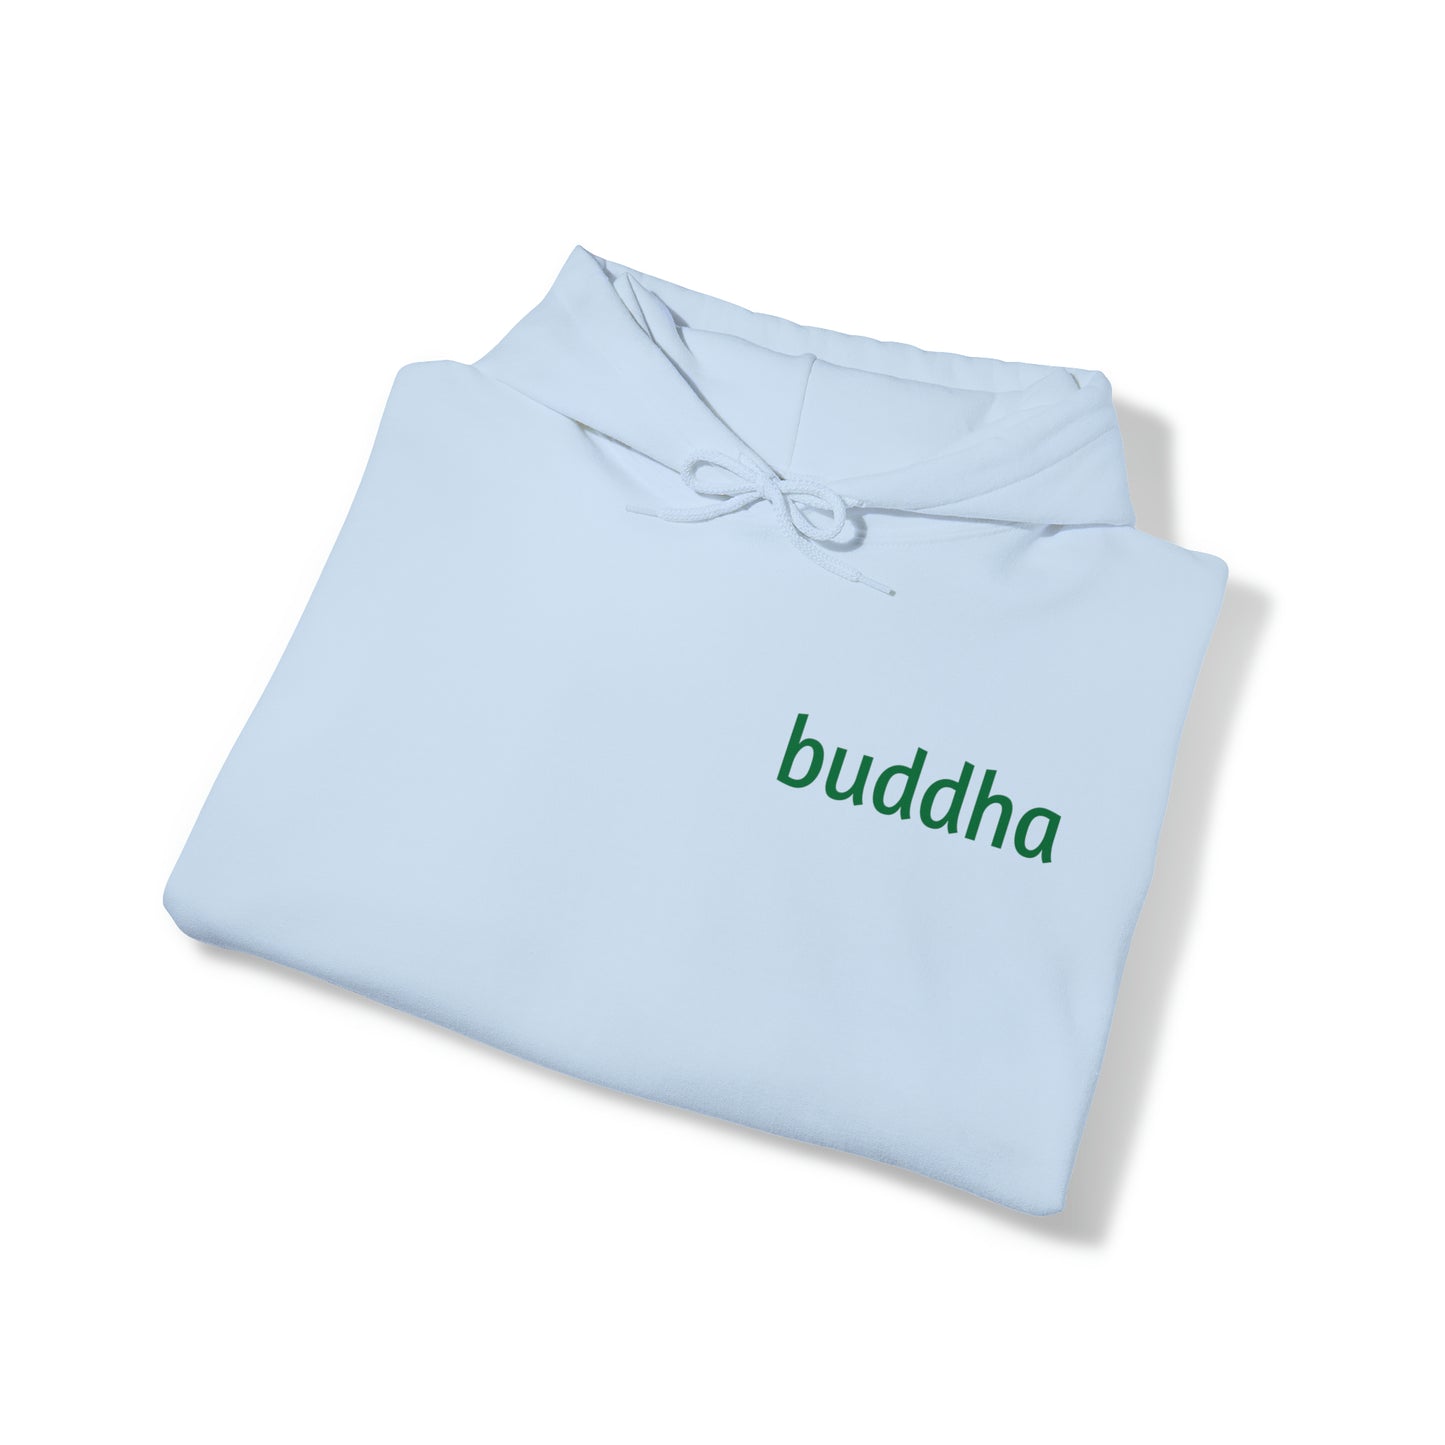 Gautam Buddha Hooded Sweatshirt